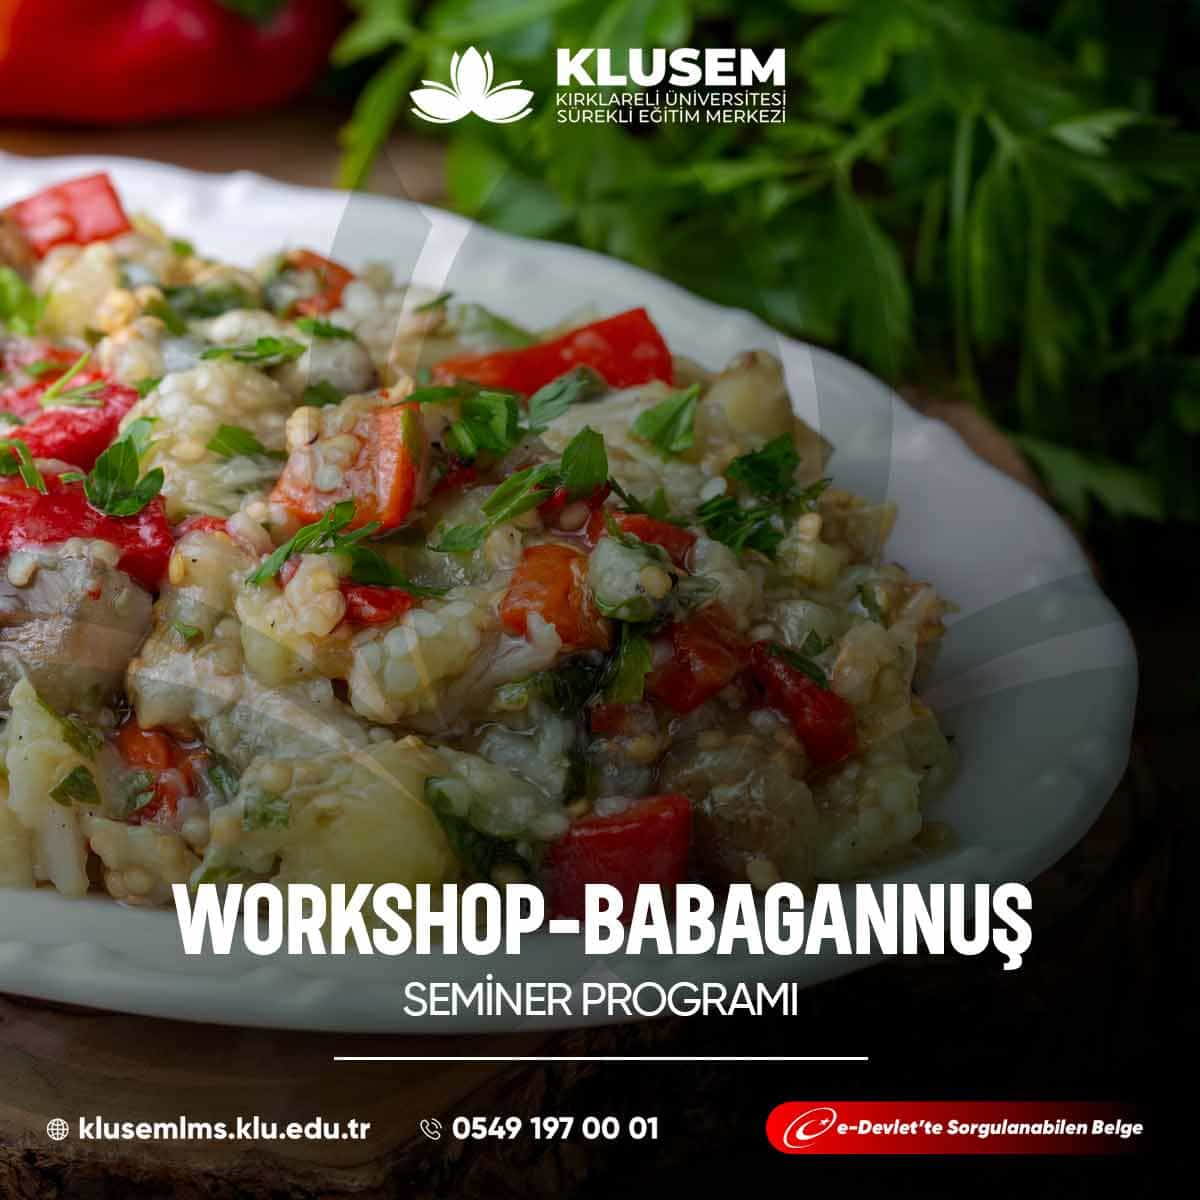 "Babagannuş Workshop," katılımcılara Orta Doğu mutfağının lezzetli bir mezze tabağı olan babagannuş yapmayı öğrenme fırsatı sunar.